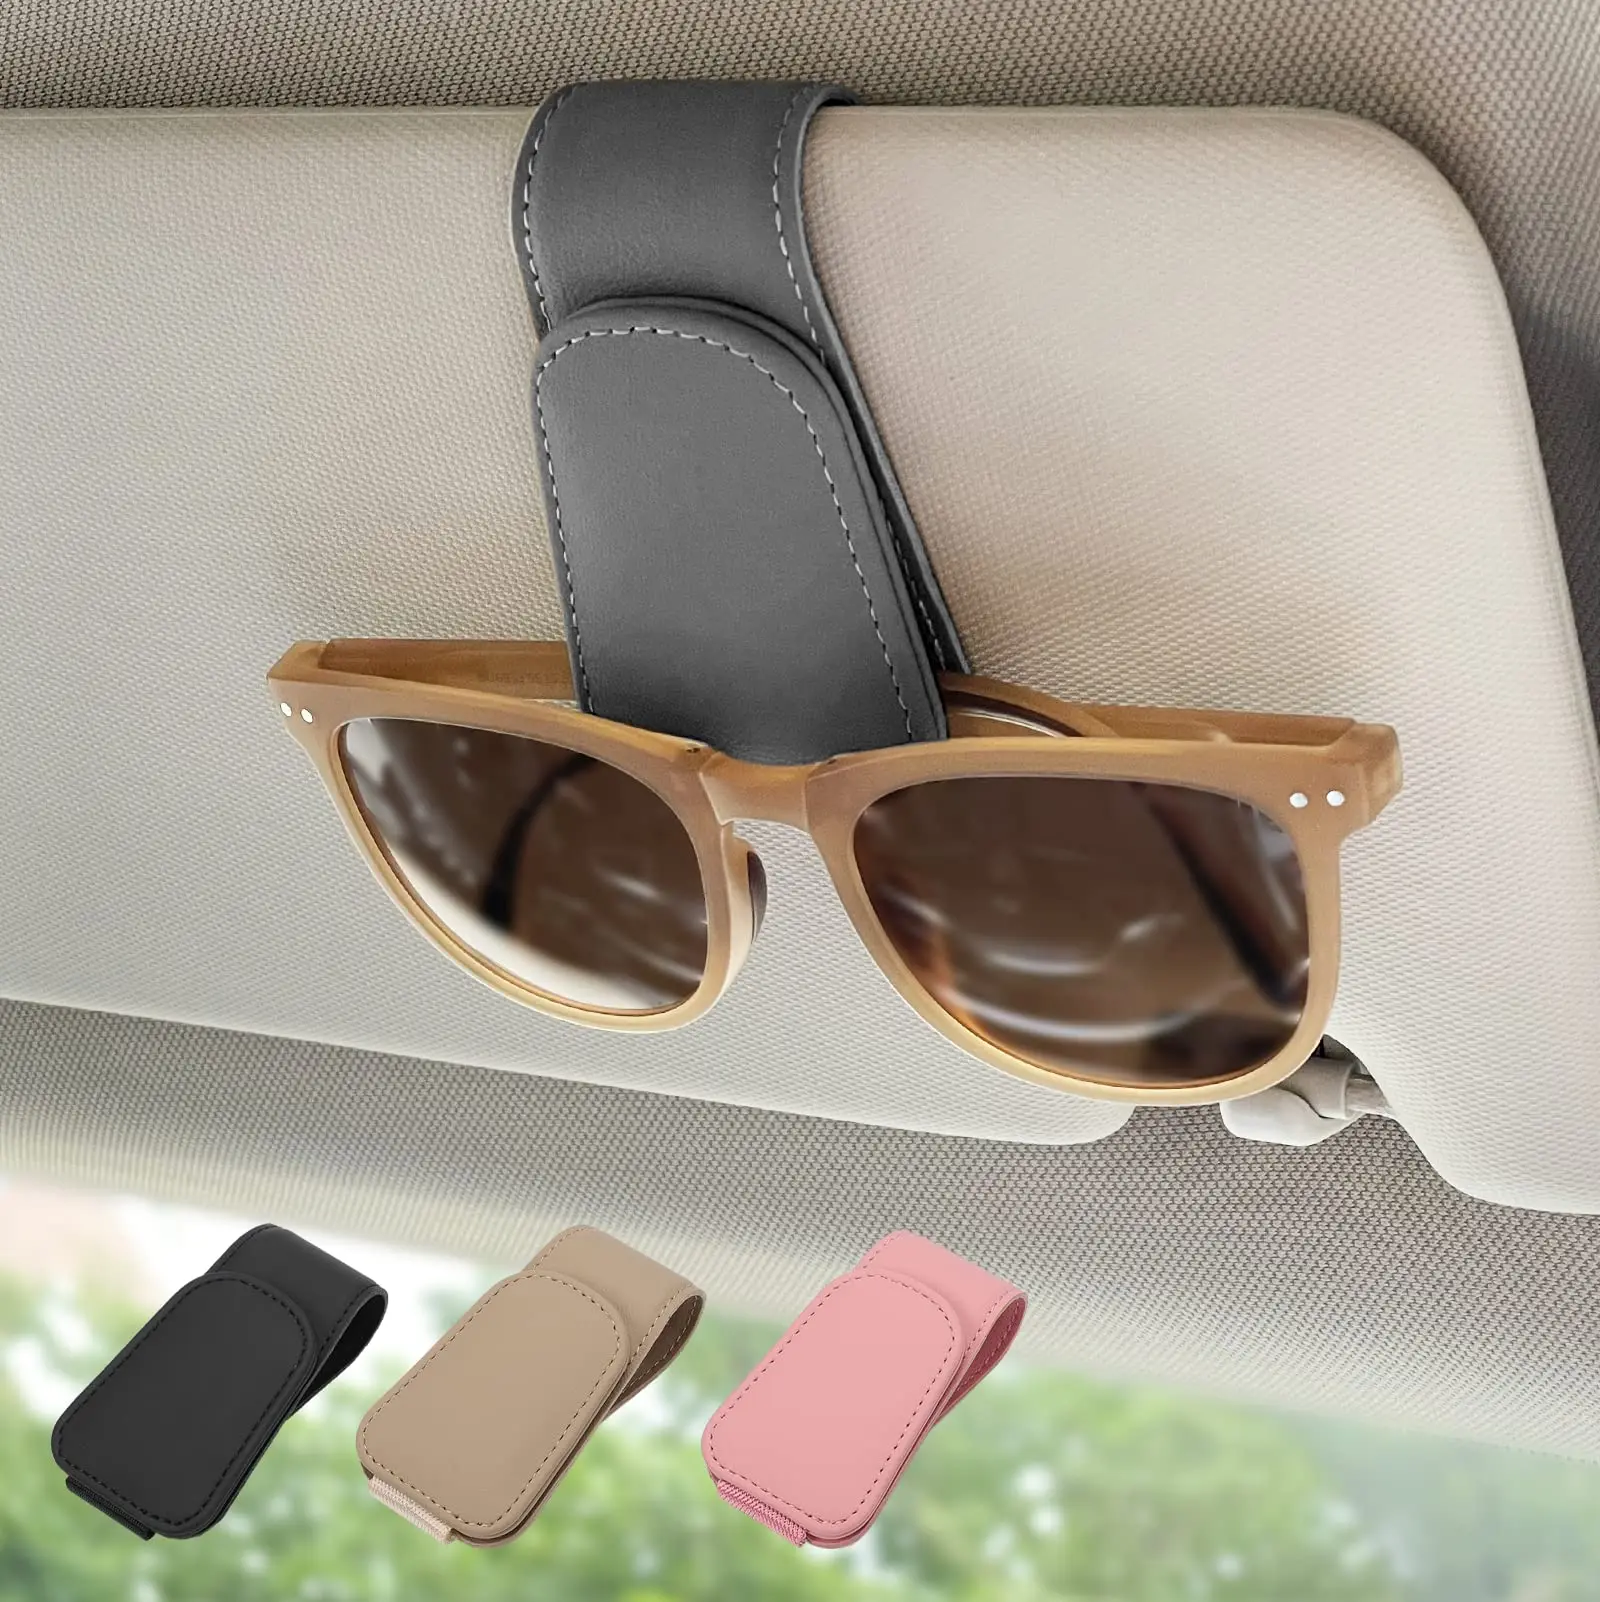 

Magnetic Leather Sunglass Holder, Eyeglass Hanger Clip for Car Sun Visor, Suitable for Different Size Eyeglasses (Gray)